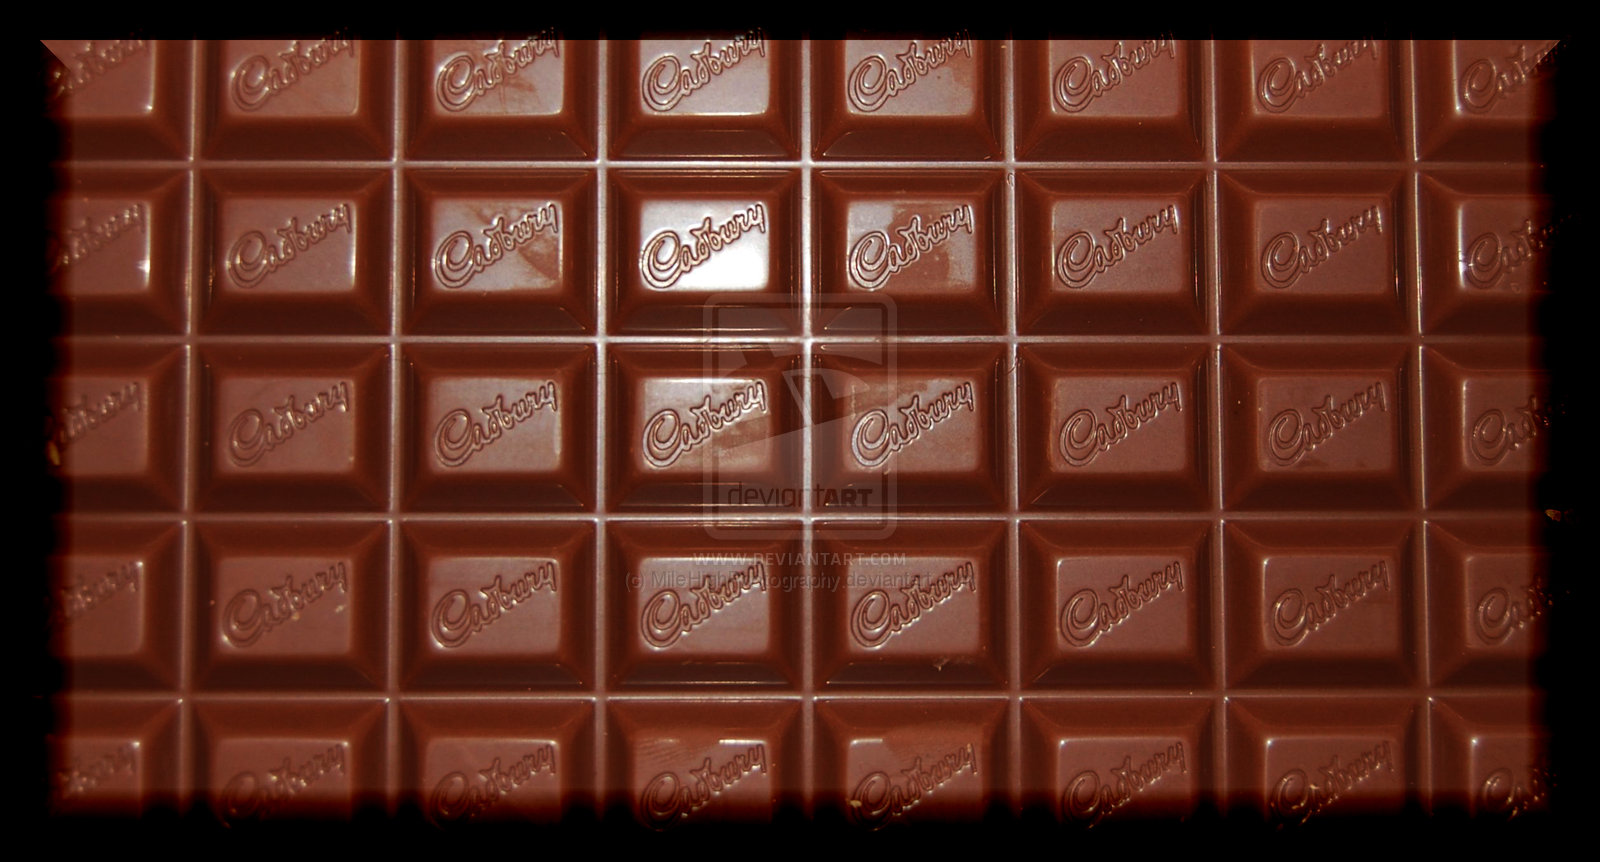 Cadburys Chocolate Bar by MileHighPhotography on